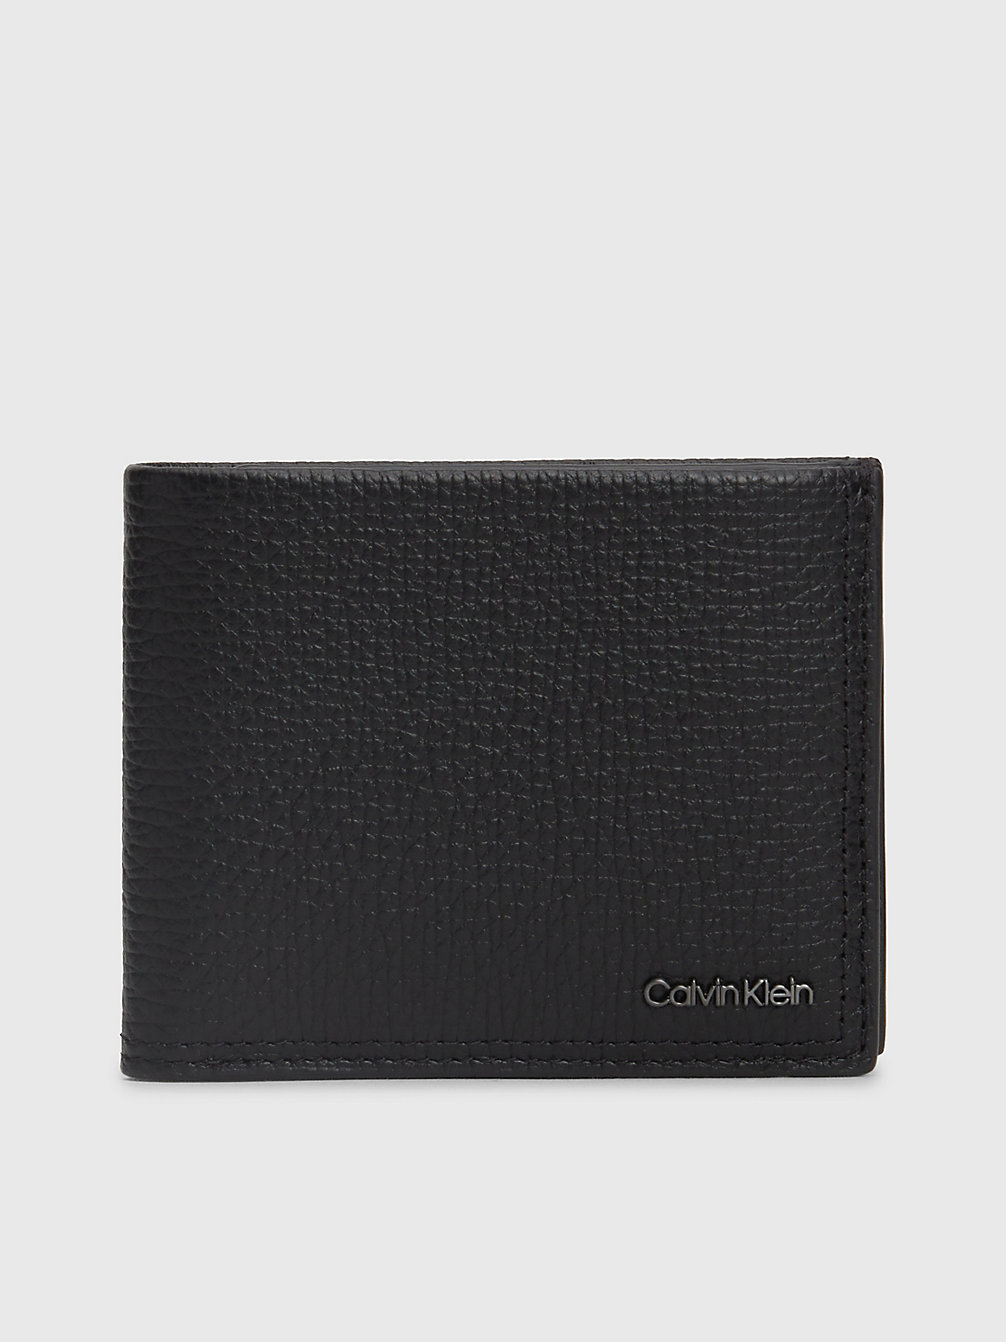 CK BLACK Leather Billfold Wallet undefined men Calvin Klein